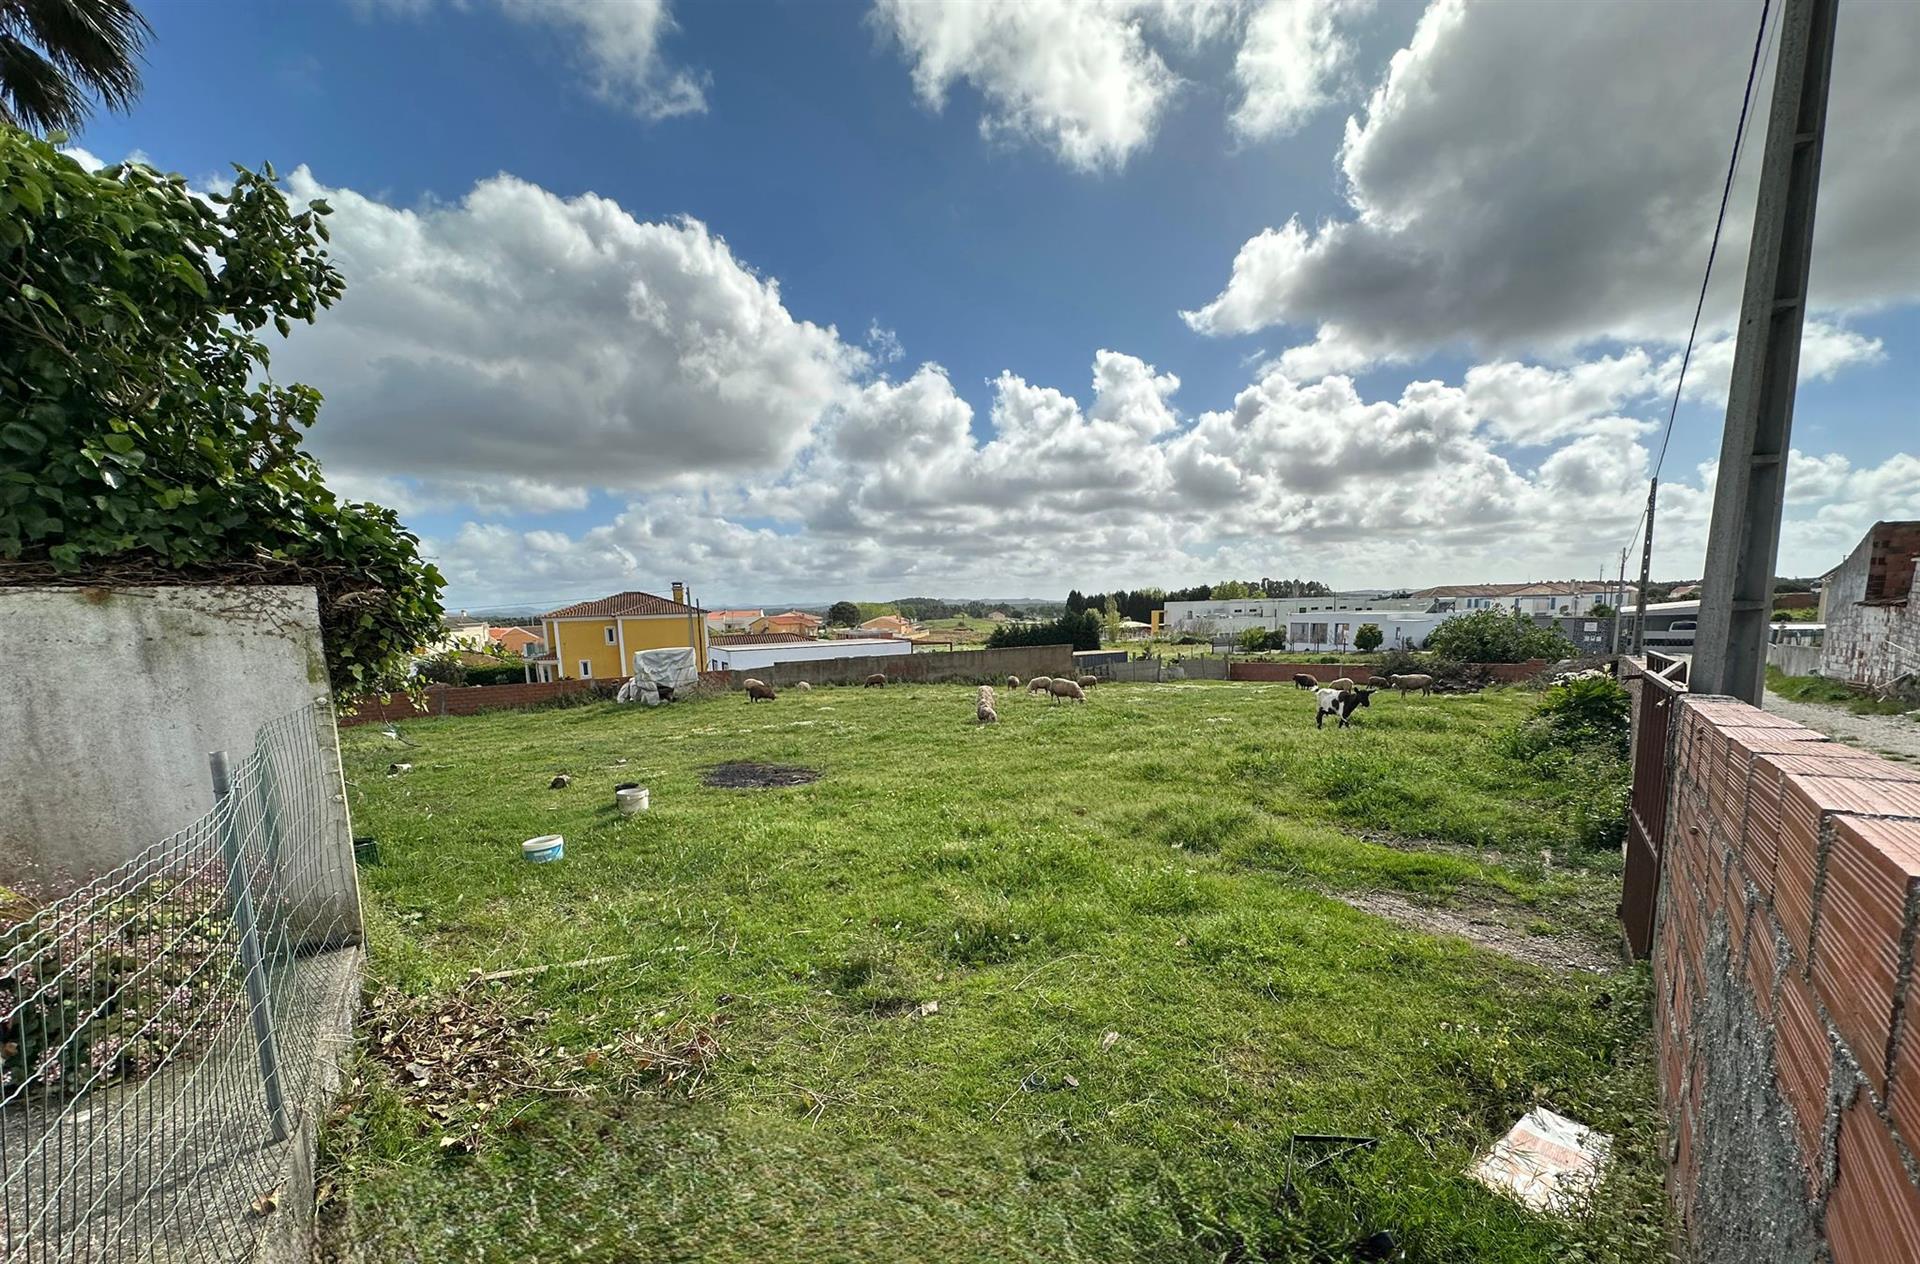 Terrain à bâtir pour la construction de logements, centre ville, près de Torres Vedras